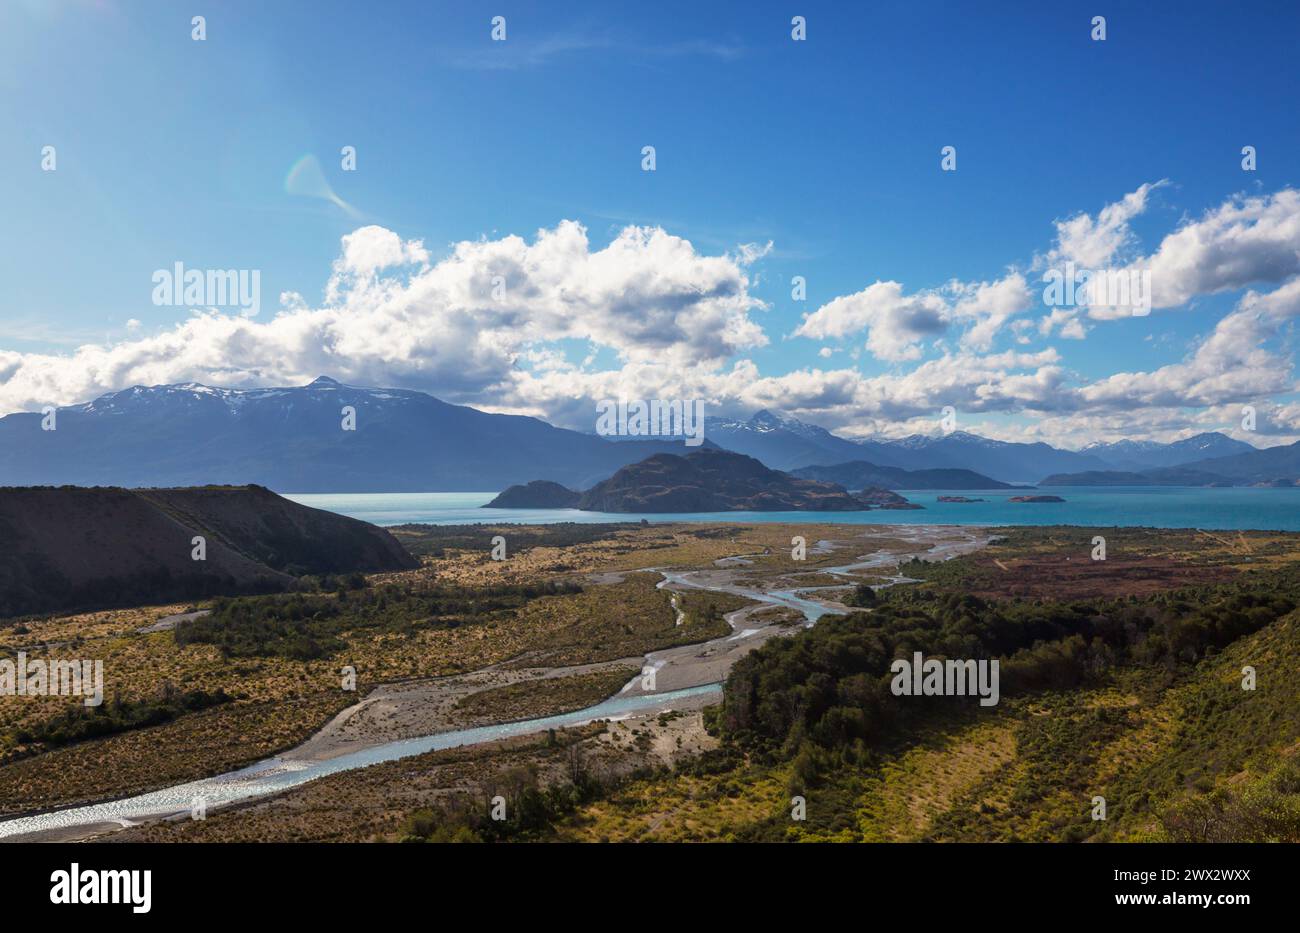 General Carrera Lake, Carretera Austral, Patagonien - Chile. Wunderschöne Naturlandschaften in Südamerika Stockfoto